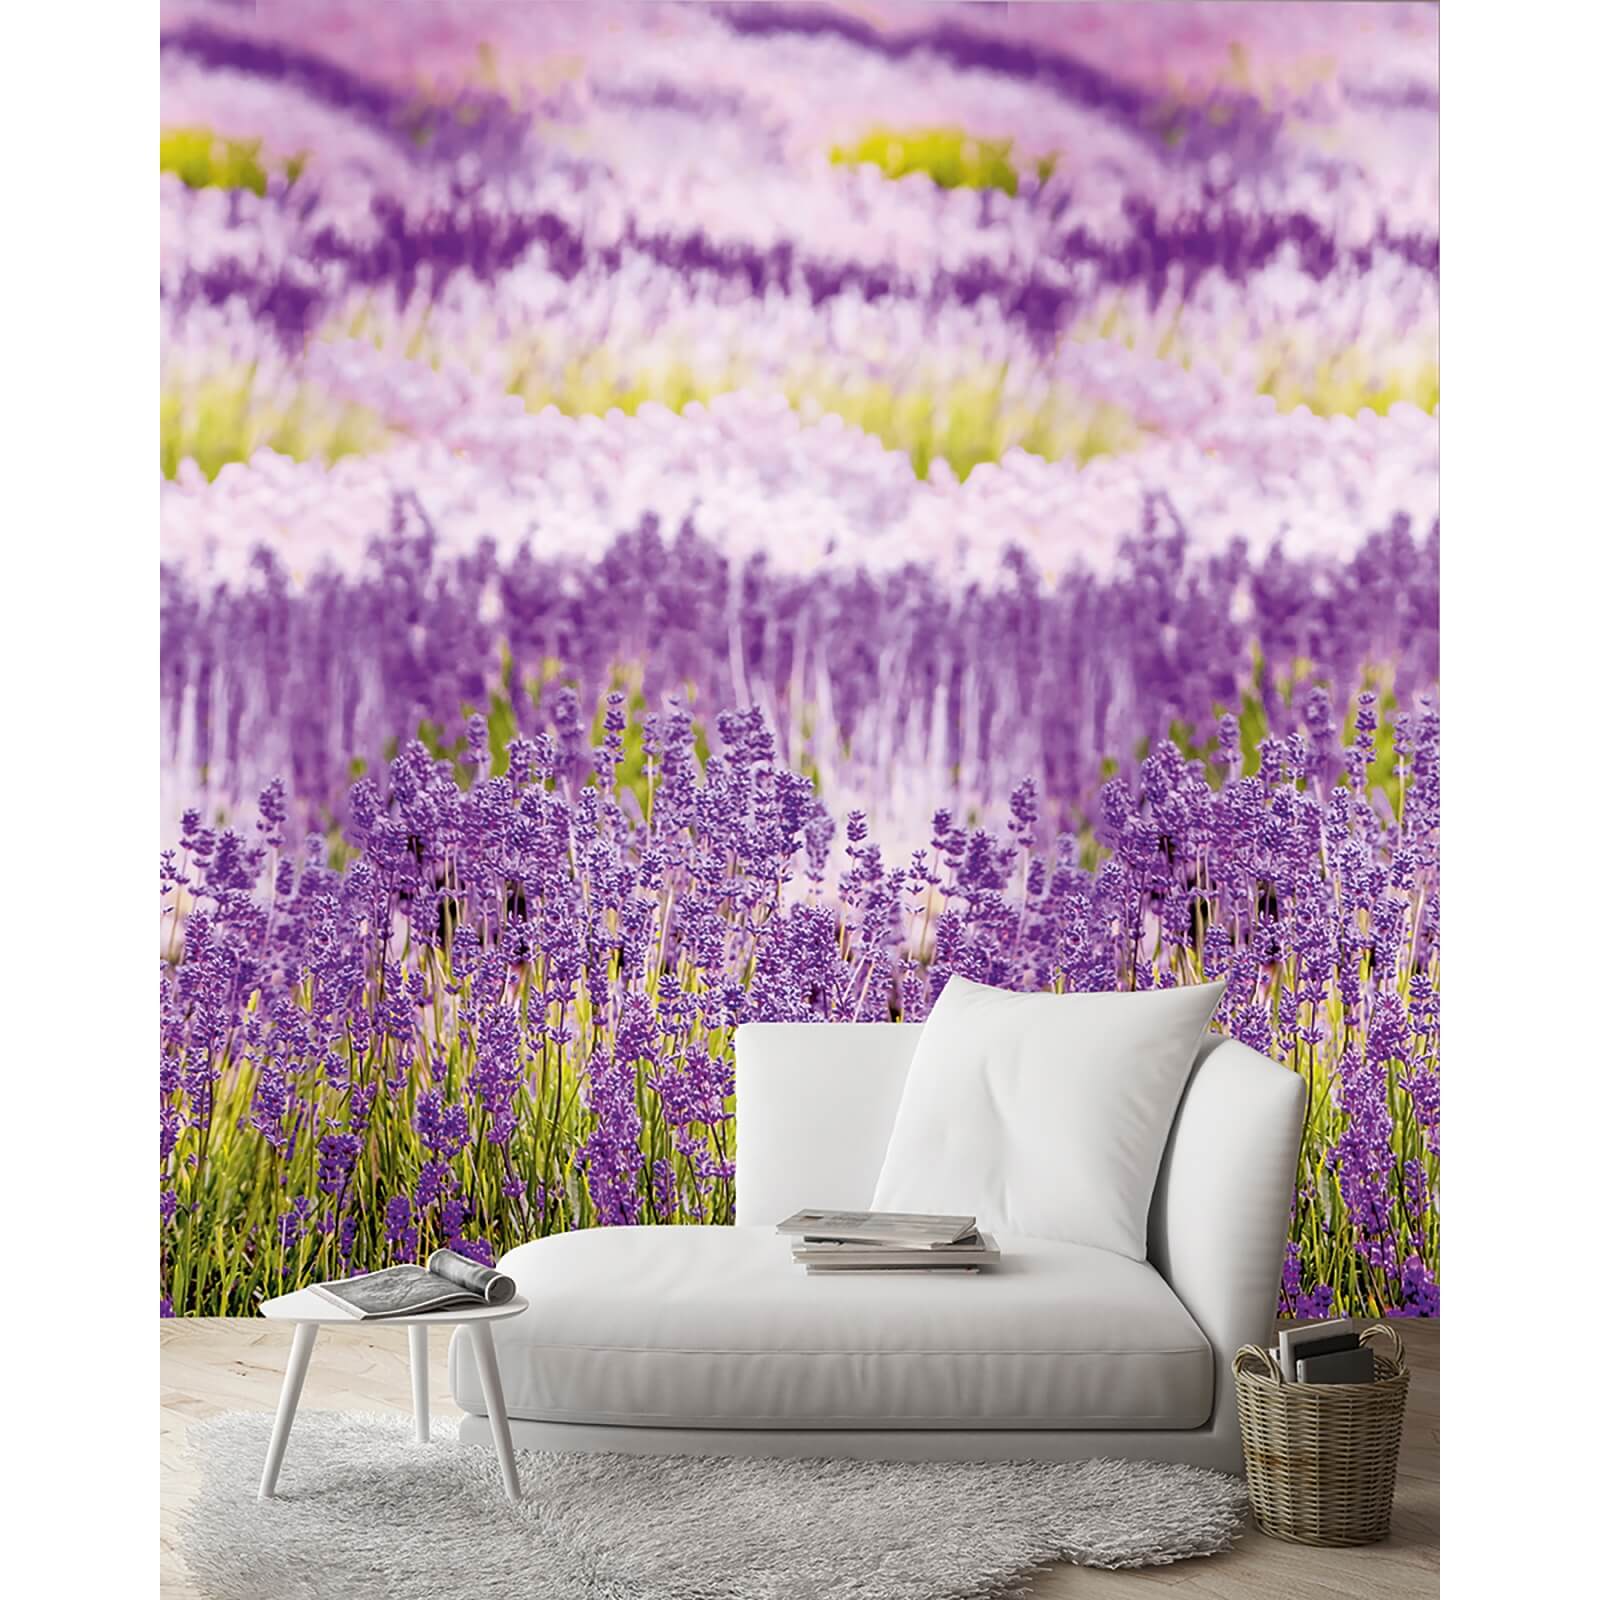 Grandeco Lavender Purple Digital Wallpaper Mural